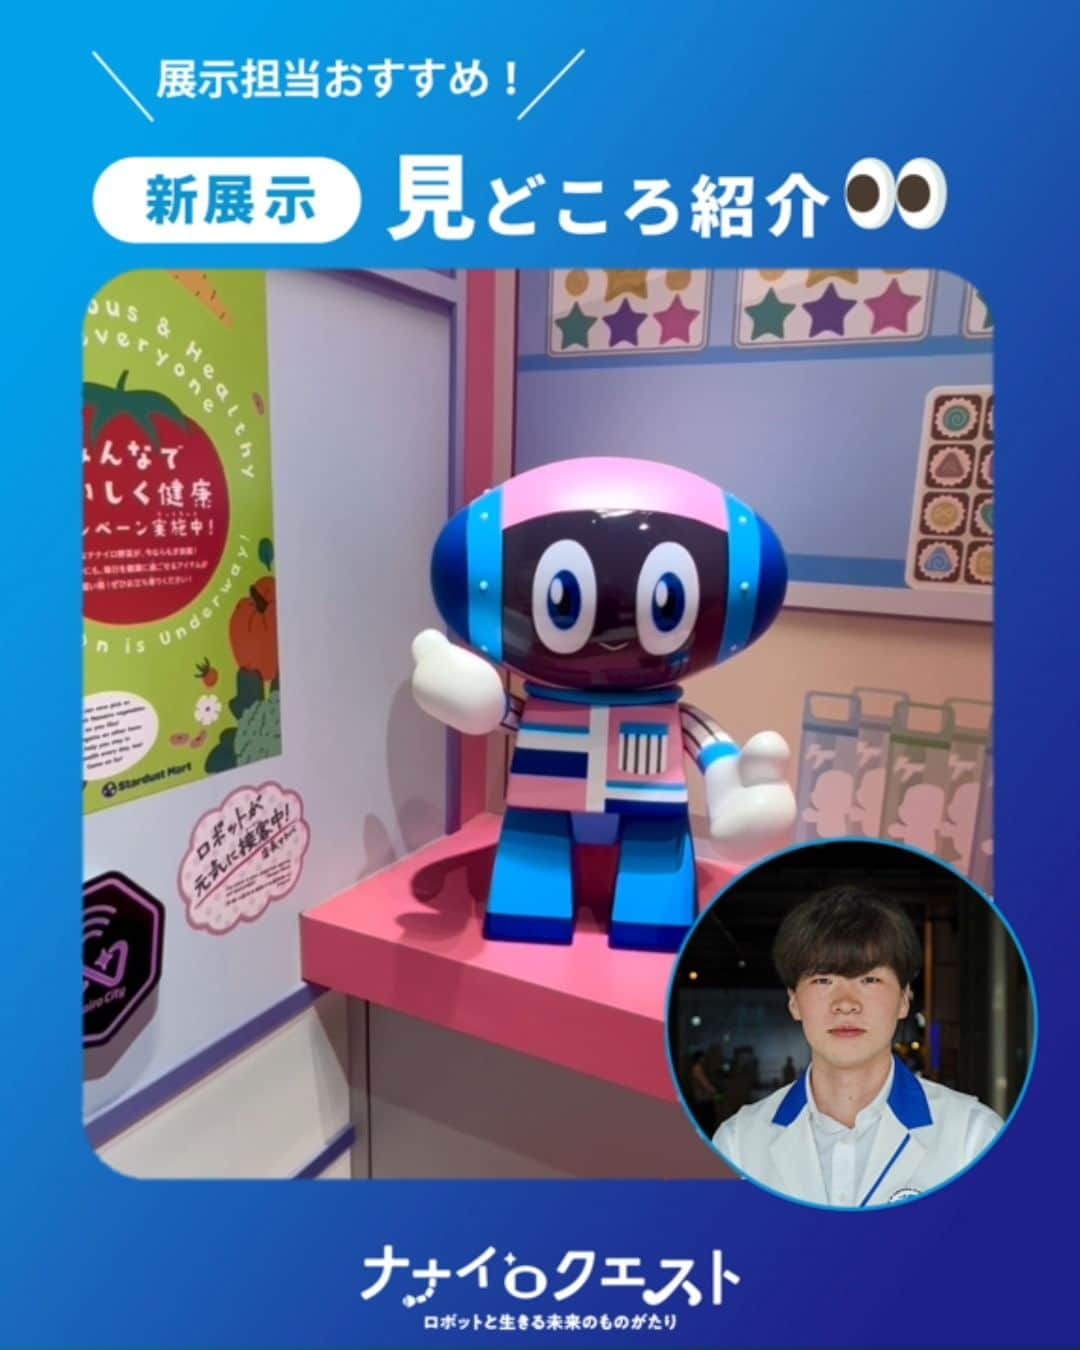 Miraikan, 日本科学未来館のインスタグラム：「【見どころは「描かれた様々なロボットの姿」】  ロボットをテーマにした新展示「ナナイロクエスト －ロボットと生きる未来のものがたり」。リサーチ・企画担当 岩澤がおすすめする見どころは…👀  展示内の各所に描かれたさまざまなロボットたち✨  実現される可能性を監修者の安藤健さんと一緒に検討しながら、ロボットたちの姿を一つひとつ考えました🤖  ごみ拾い、買い物、配膳、配達、接客… 未来に活躍してほしいのはどんなロボットですか？🤔  #miraikan #未来館 #日本科学未来館 #科学館 #東京テレポート #お台場 #ミュージアム #博物館巡り #博物館 #ロボット #ナナイロクエスト #未来 #お出かけスポット #東京おでかけ #子供とおでかけ #子供とお出かけ部 #sciencemuseum #museum #tokyo #odaiba #odaibatokyo #traveljapan #japantrip #japantravel」